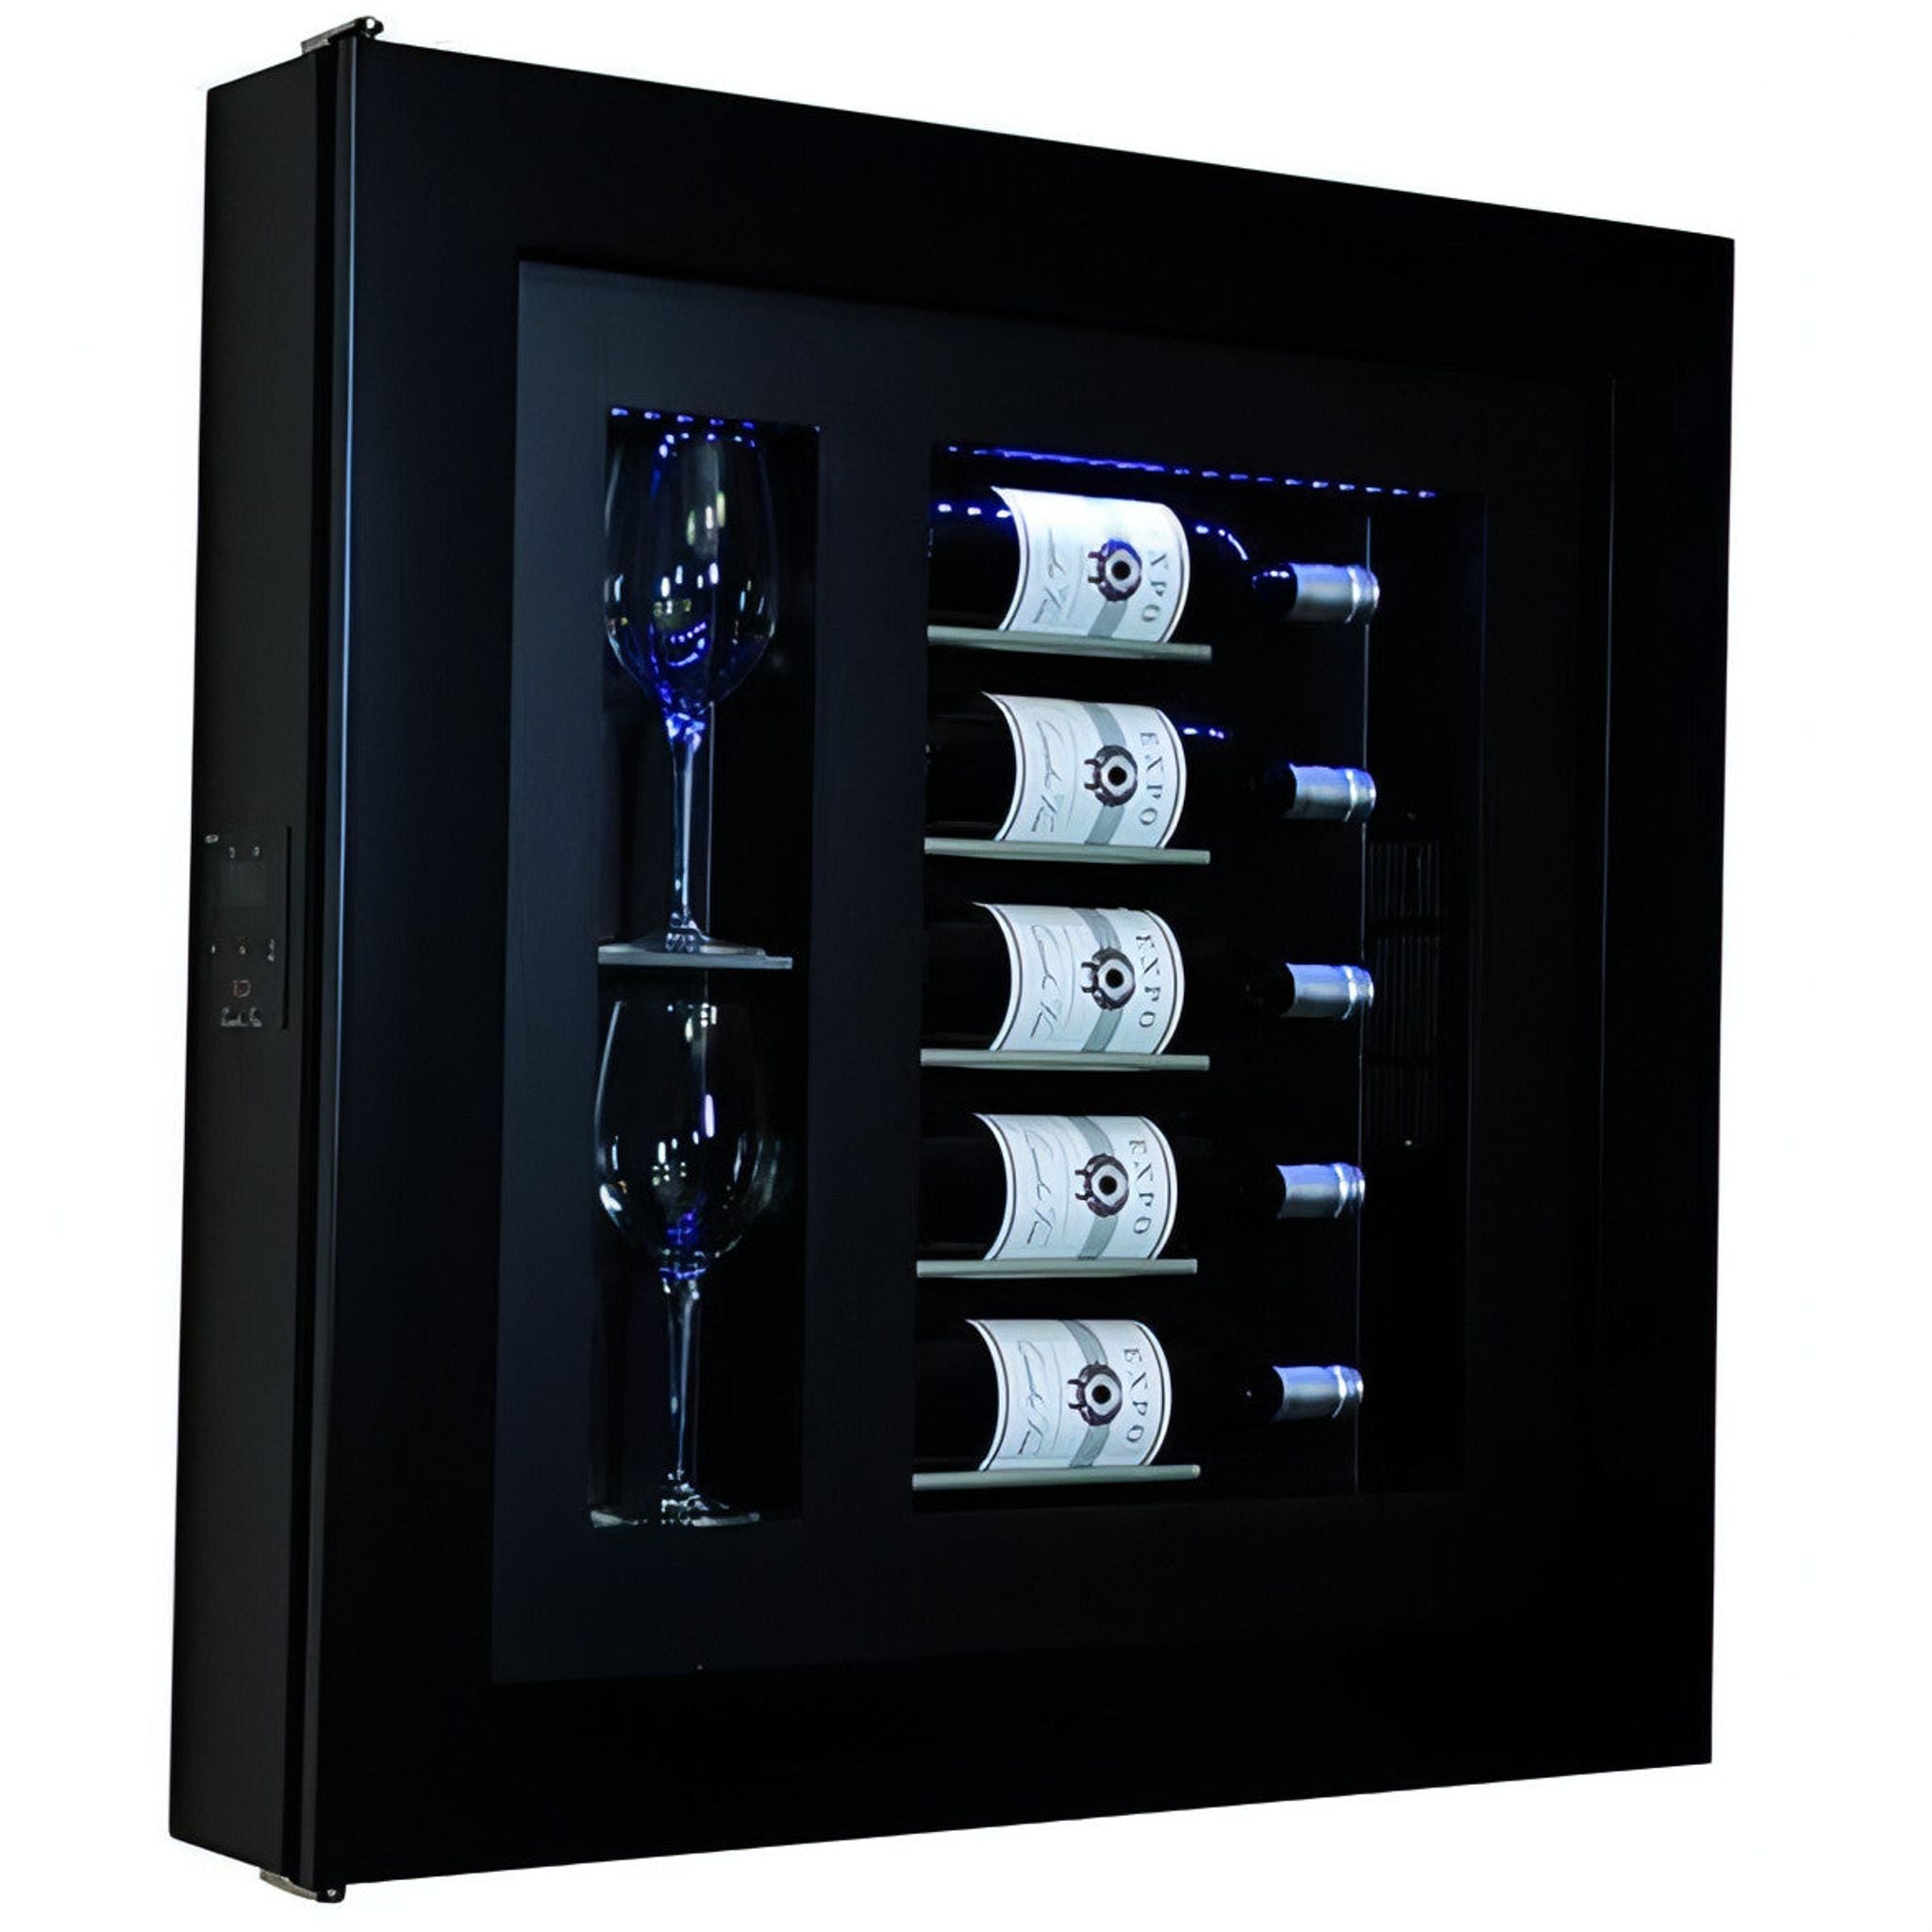 Quadro Vino - Wine Wall QV52 - 5 Bottle Display Unit